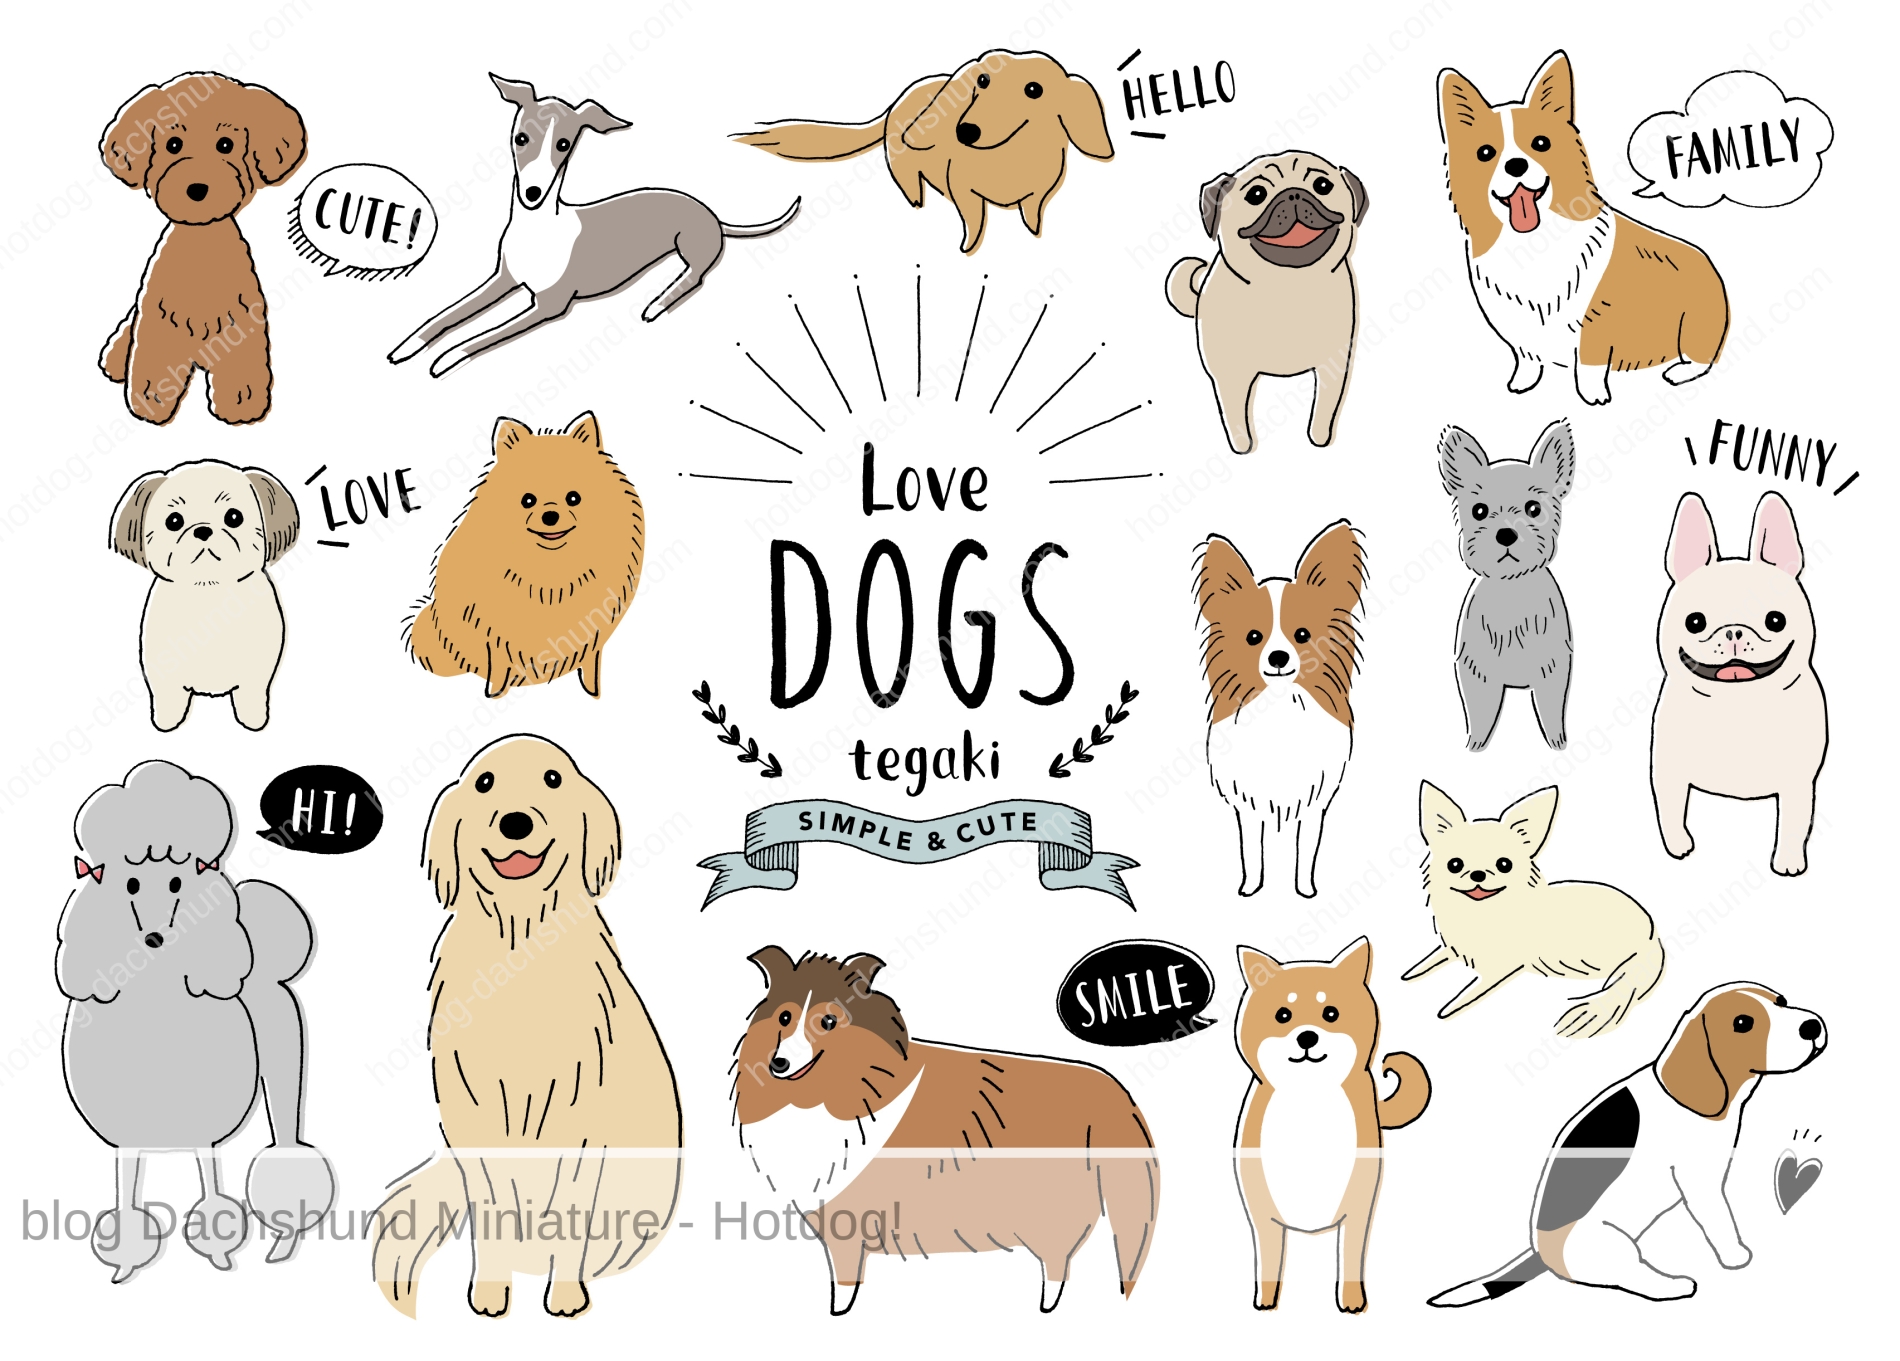 飼いやすい小型犬の種類 名前 と特徴ランキングトップ10 Hotdog ミニチュアダックスフンドブログ